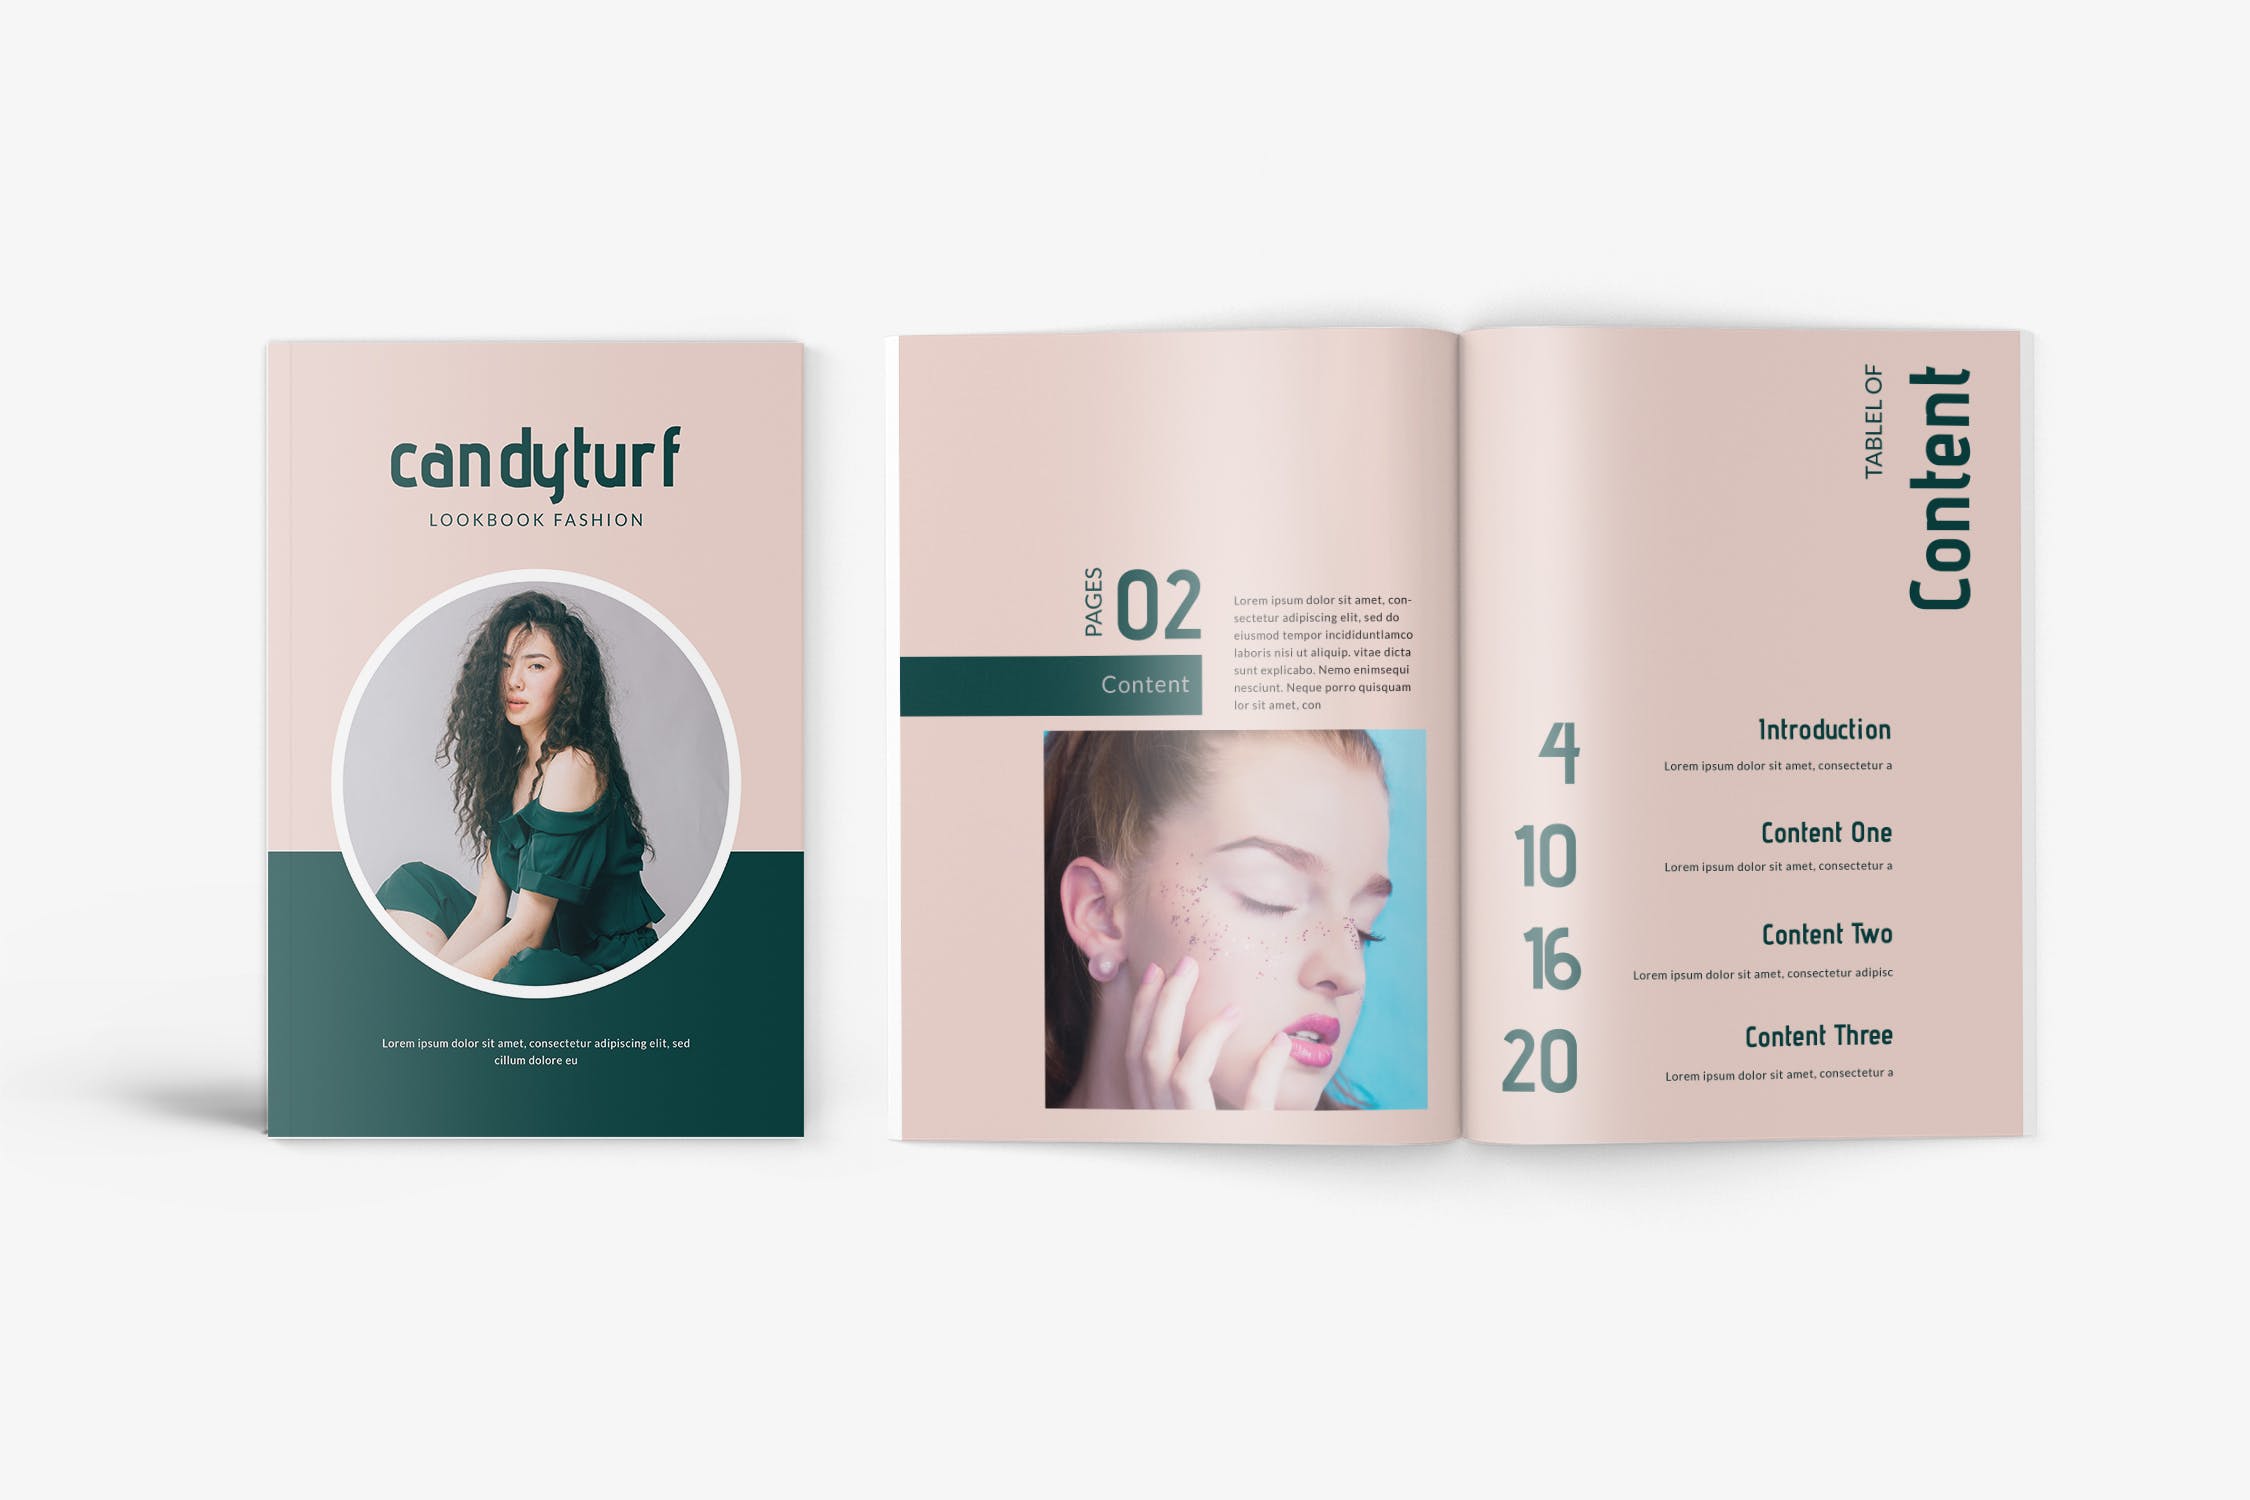 时尚服饰品牌产品第一素材精选目录设计模板 Candyturf Fashion Lookbook Catalogue插图